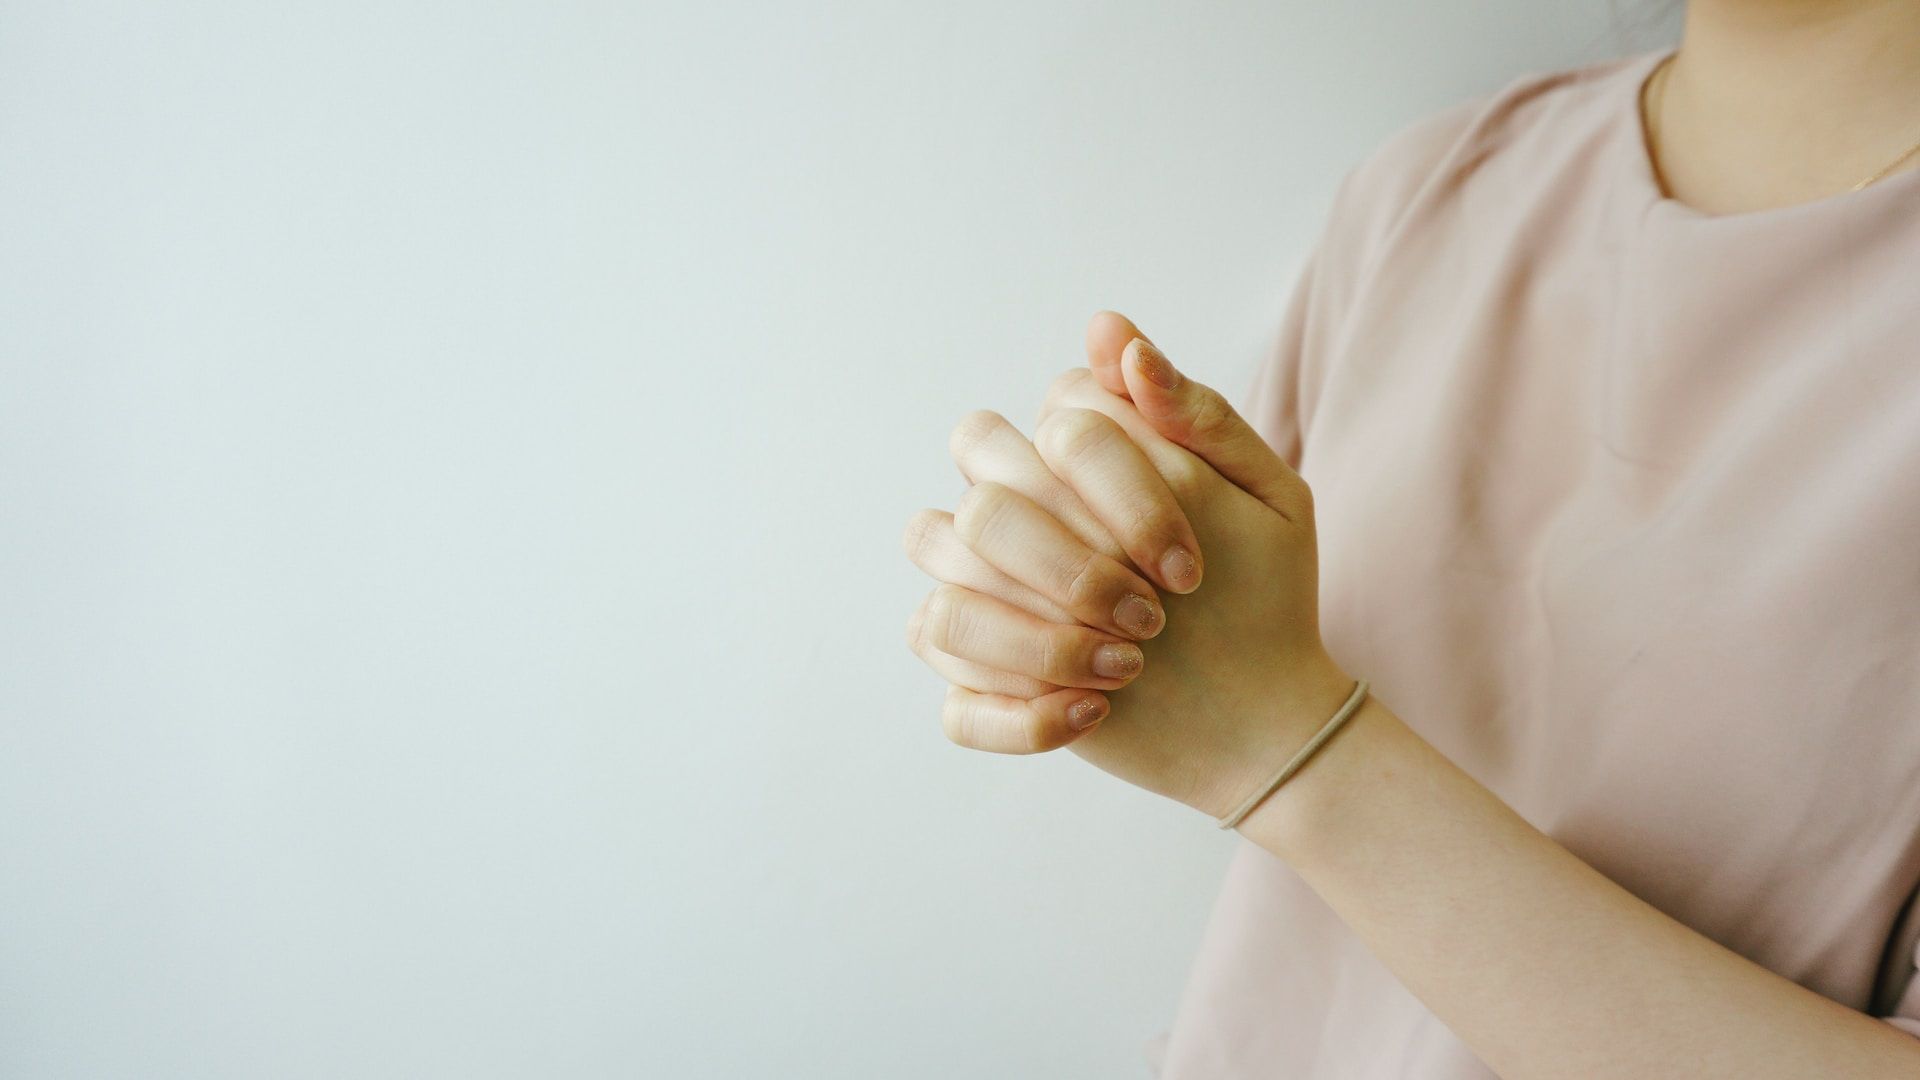 mains jointes d'une femme en train de prier Photo by Ruben Hutabarat on Unsplashhttps://unsplash.com/fr/photos/ZA1Wvos1WYM